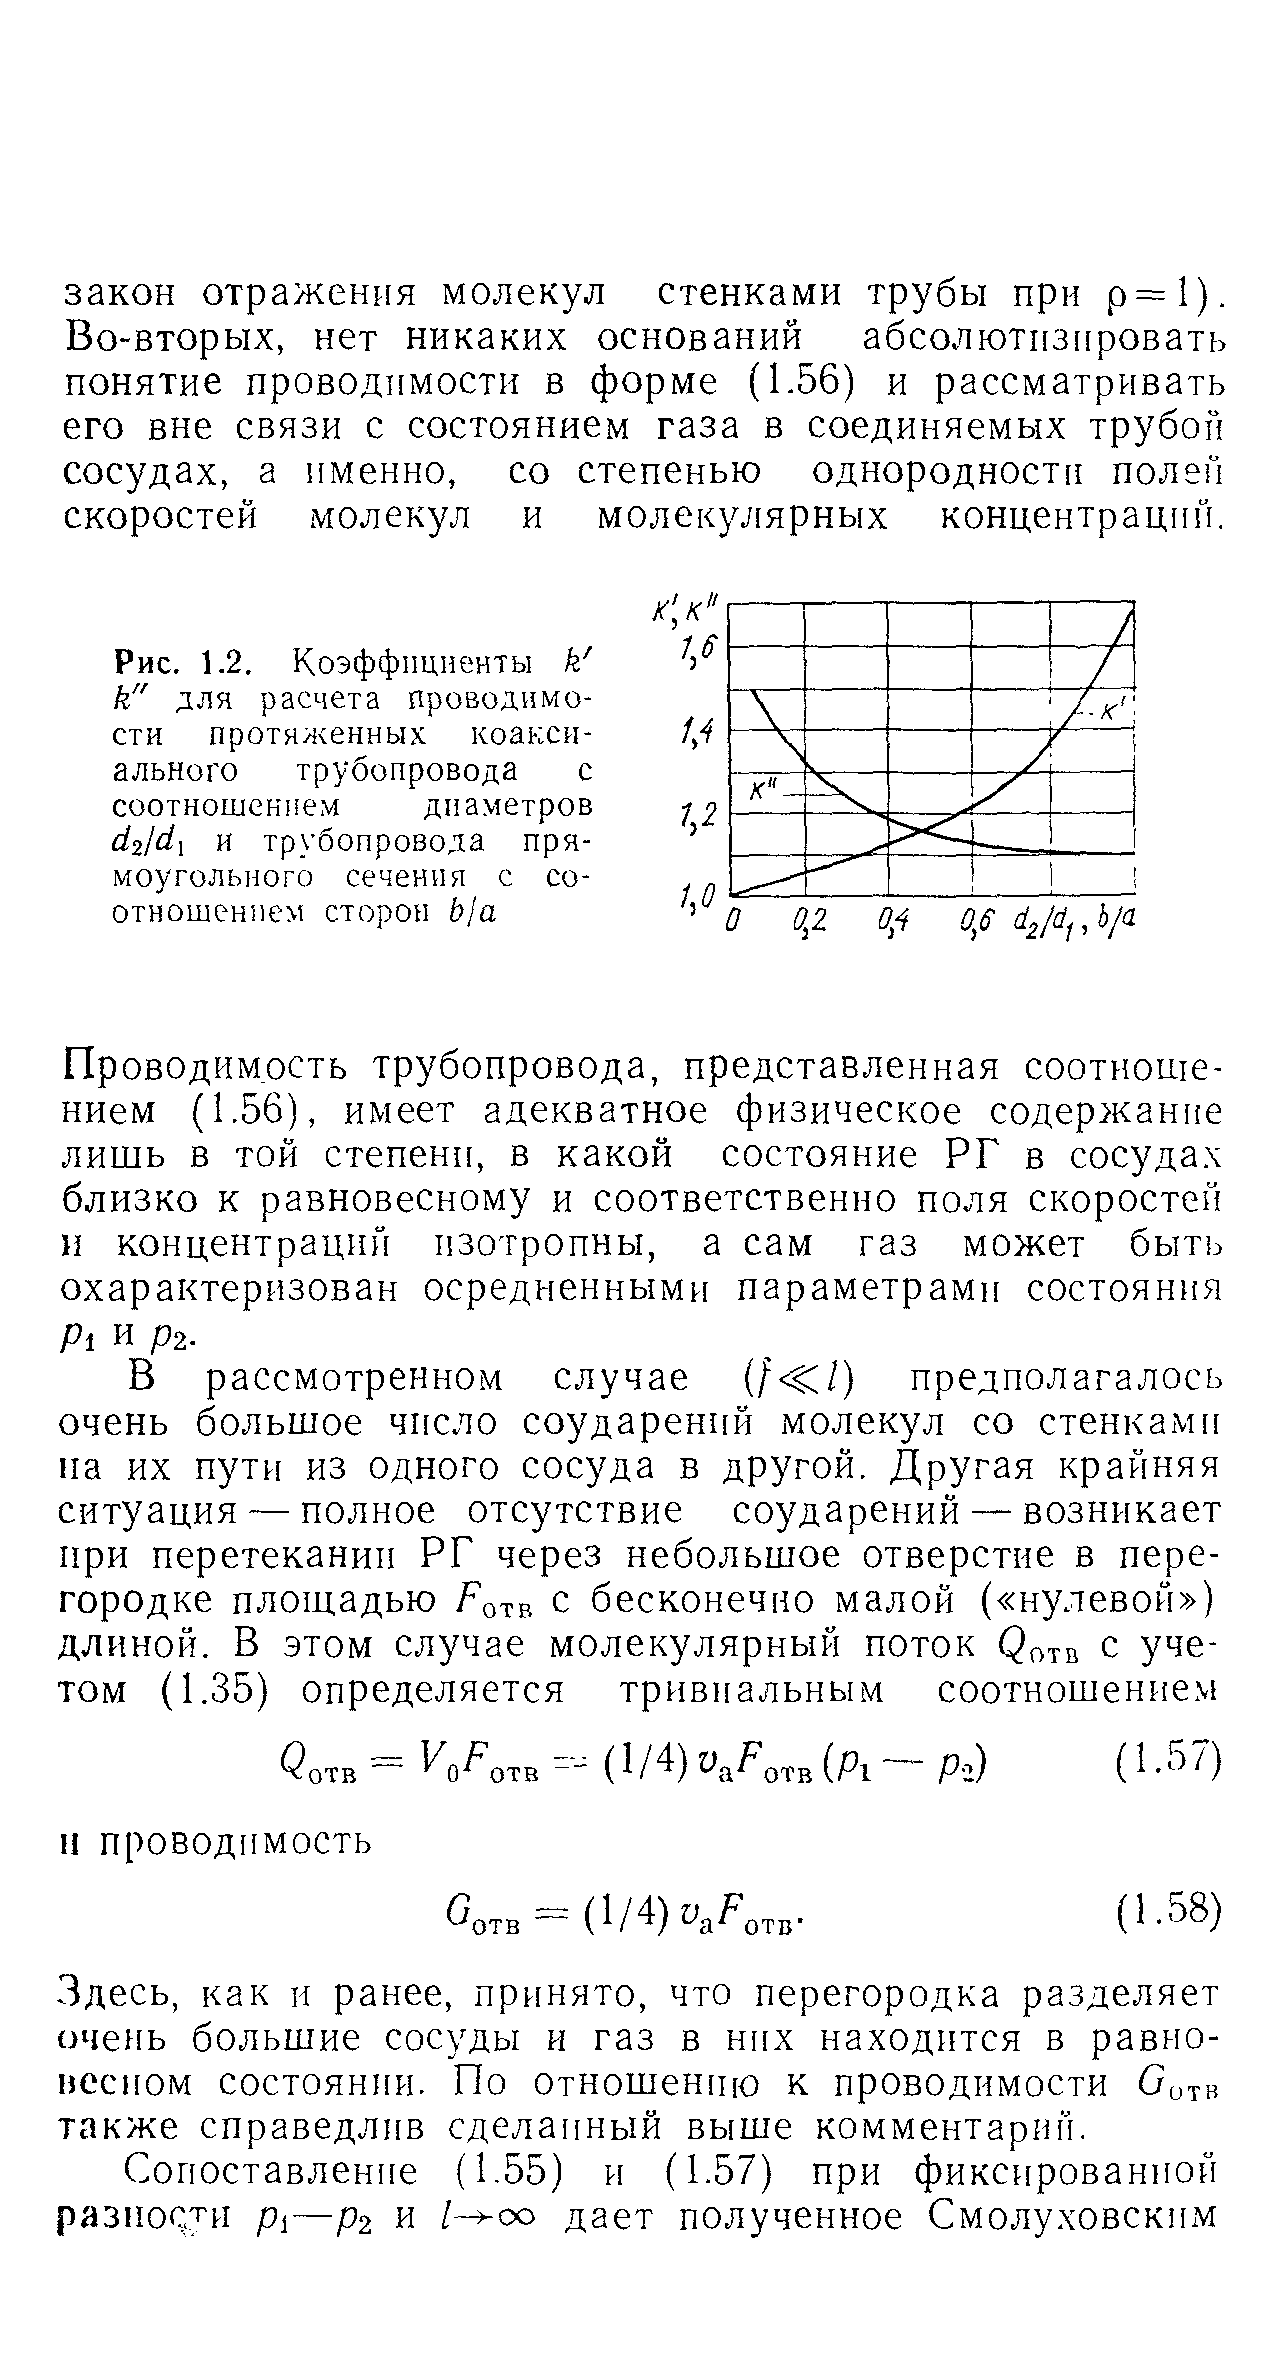 Рис. 1.2. Коэффициенты k k" для расчета проводимости протялчбнных коаксиального трубопровода с соотношением диаметров и трубопровода прямоугольного сечения с соотношением сторон bja
